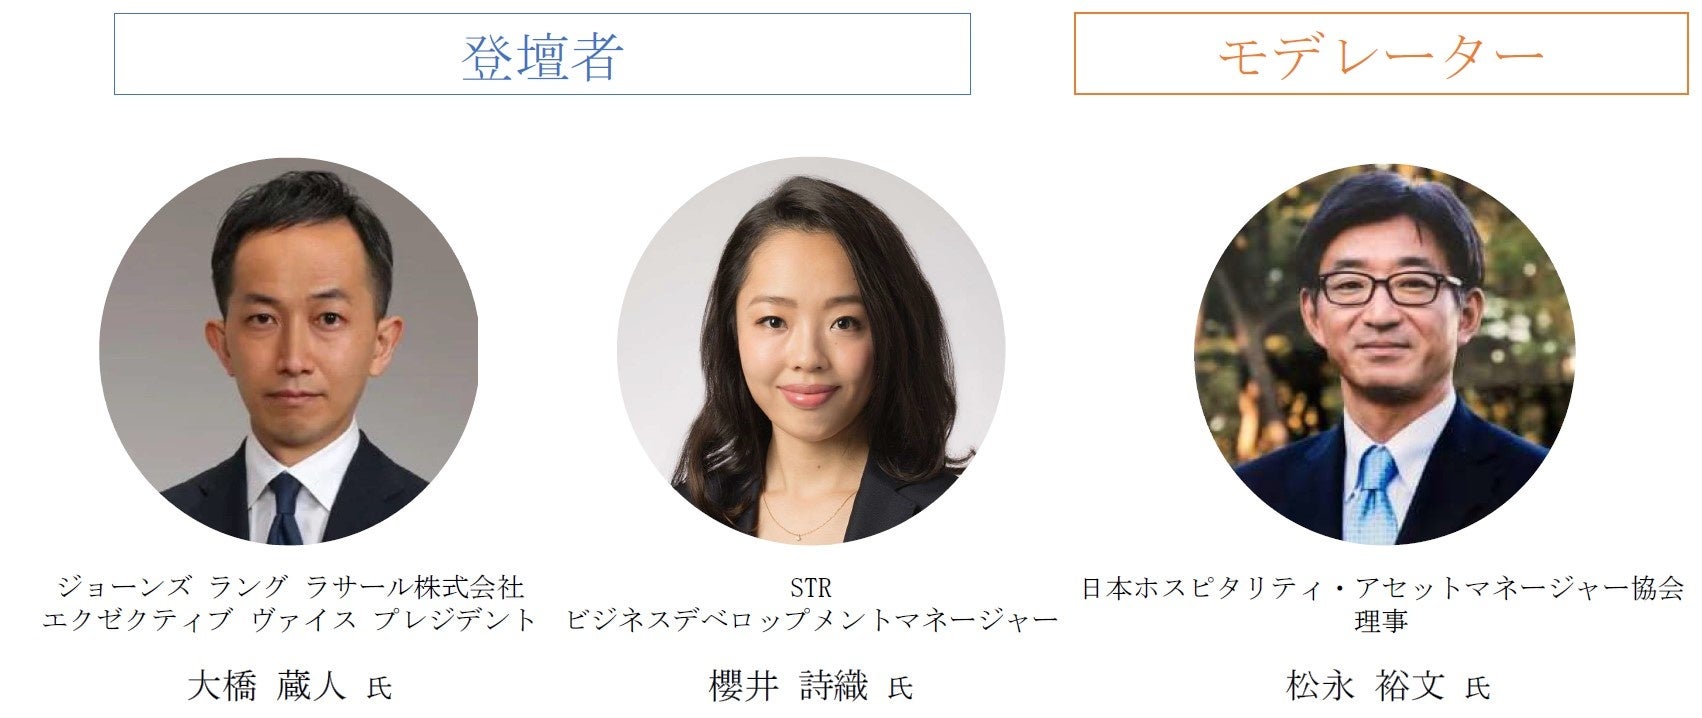 Money Forward X、広島銀行『〈ひろぎん〉ビジネスポータル』にアカウントアグリゲーション基盤を提供